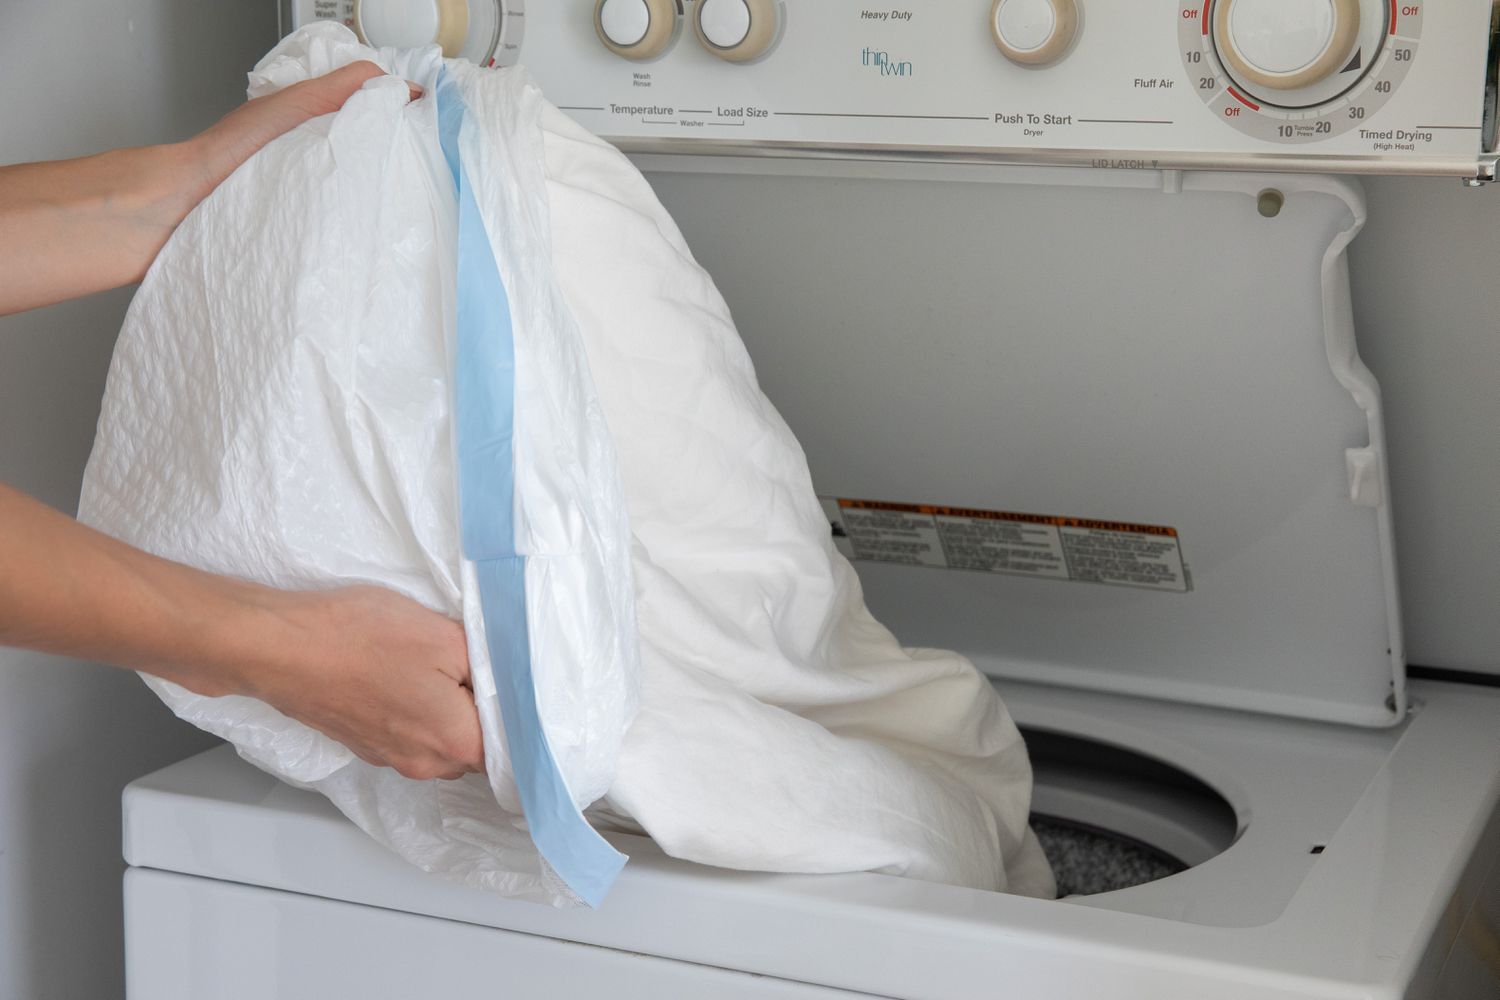 Vêtements infestés de punaises dans un sac poubelle en plastique renversé dans la machine à laver